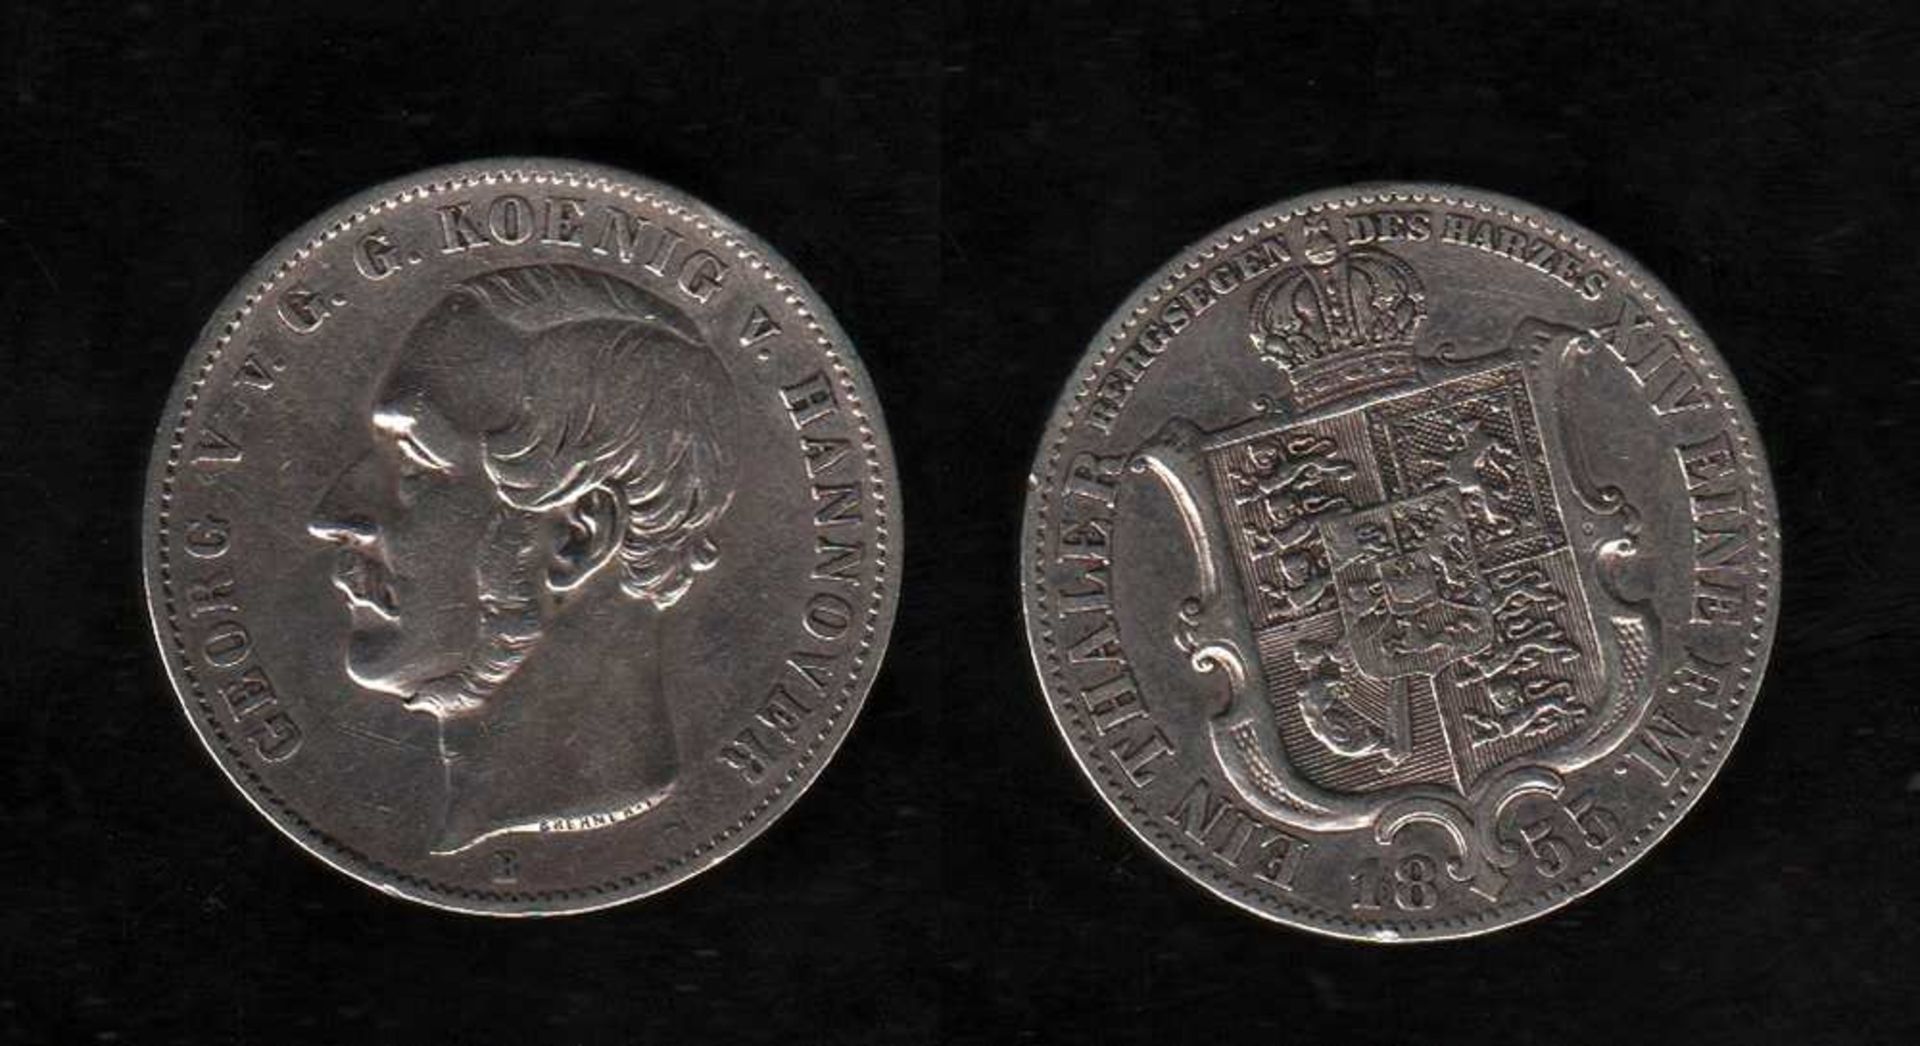 # Hannover. Silbermünze. Ausbeutetaler. Georg V., König von Hannover. B 1855. Vorderseite: Porträt